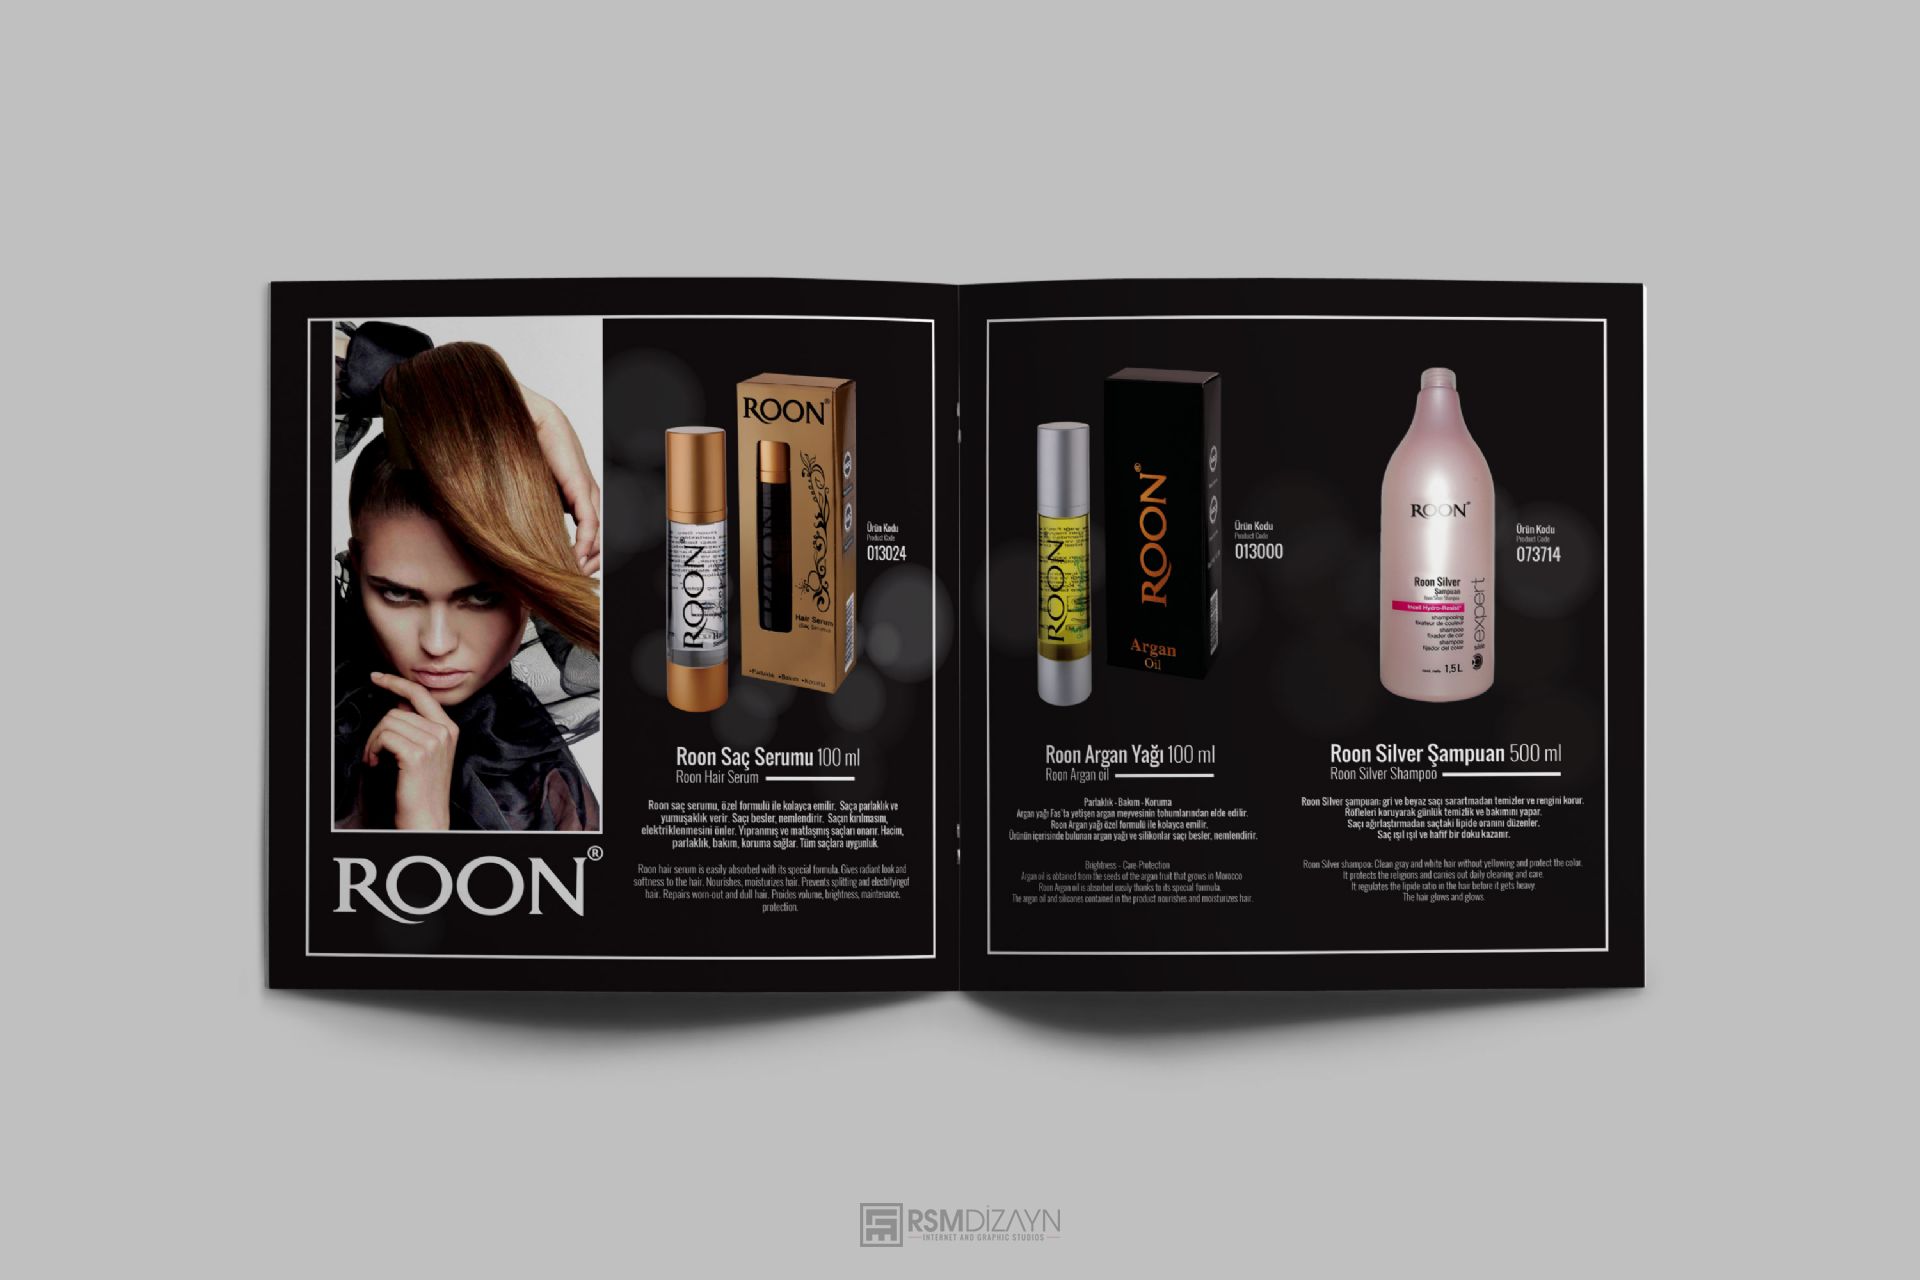 Roon Kozmetik | Katalog Tasarım ve Baskı Uygulaması